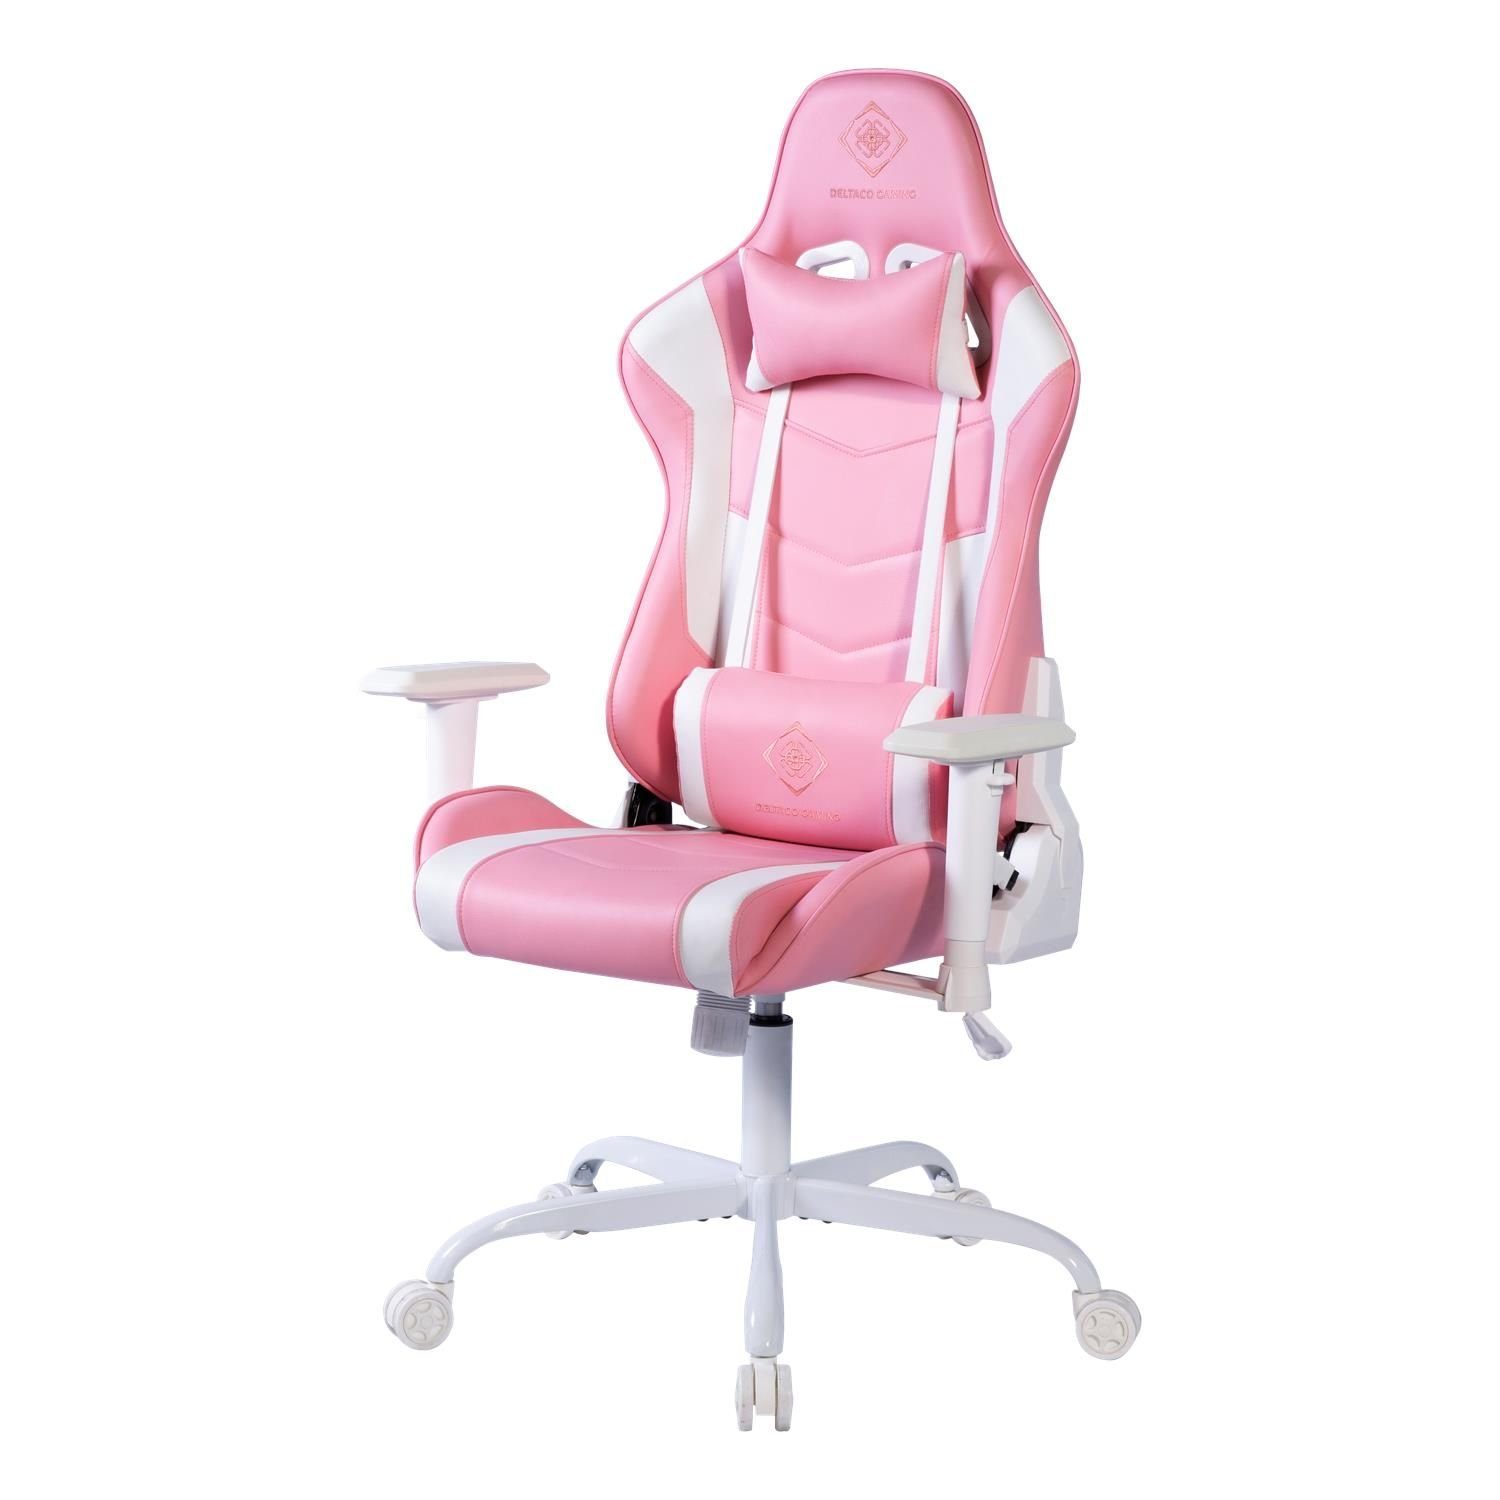 DELTACO Gaming-Stuhl Gaming Stuhl Jumbo Gamer Stuhl Kissen 110kg (kein Set), rosa, extra groß, hohe Rückenlehne, inkl. 5 Jahre Herstellergarantie pink/weiß | Stühle